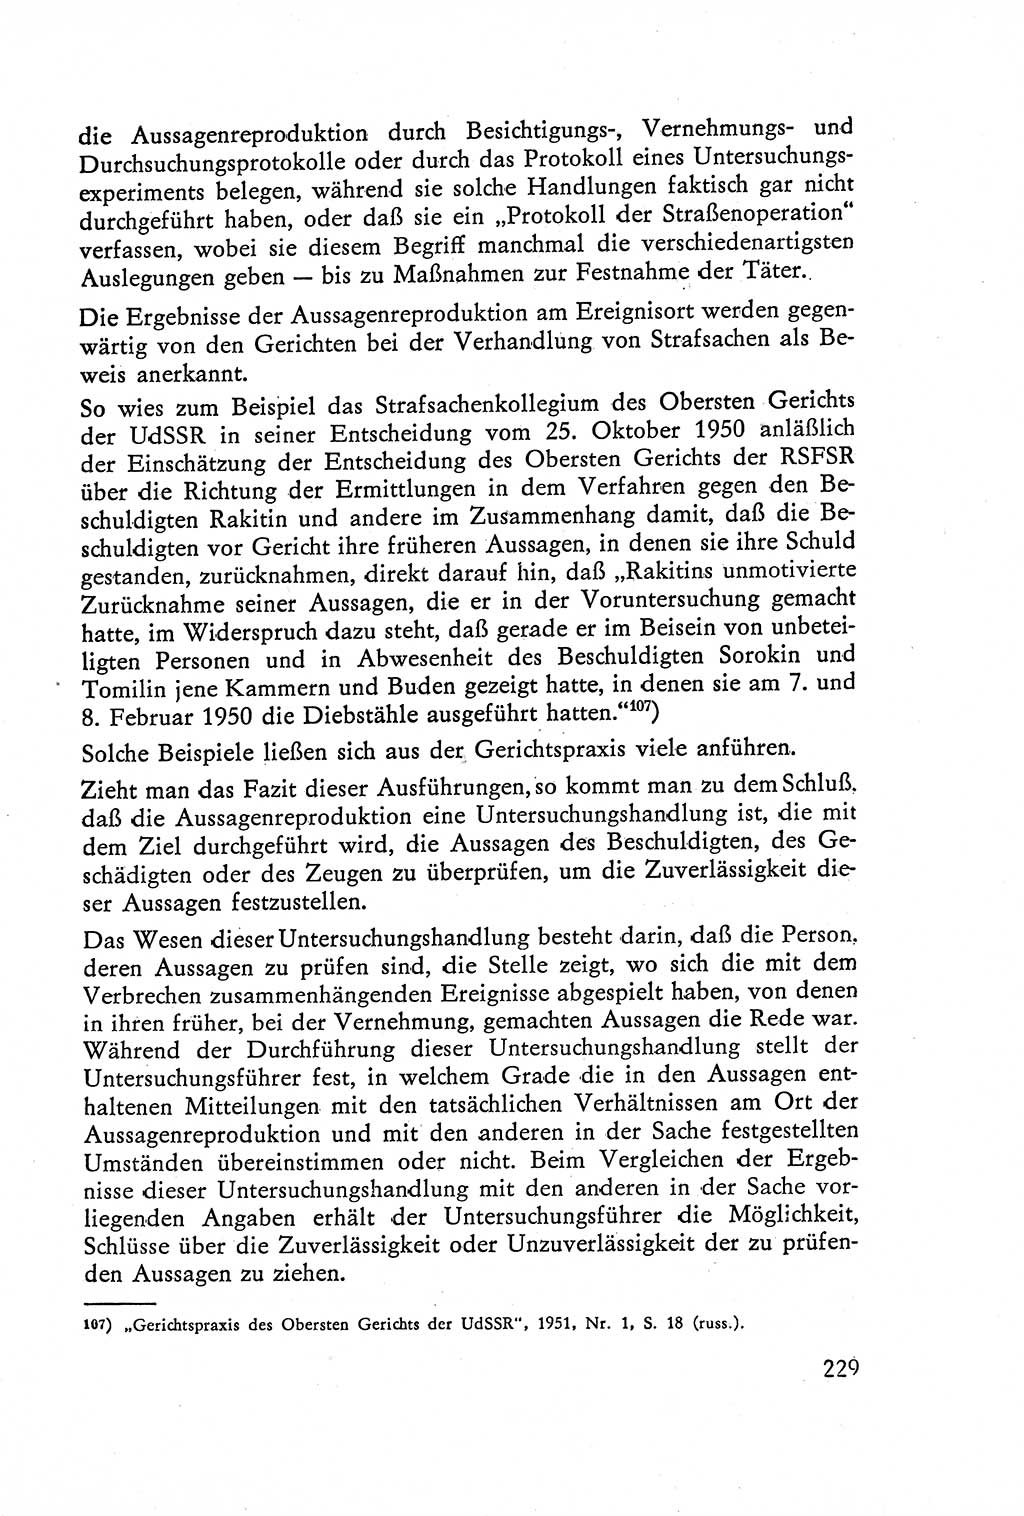 Die Vernehmung [Deutsche Demokratische Republik (DDR)] 1960, Seite 229 (Vern. DDR 1960, S. 229)